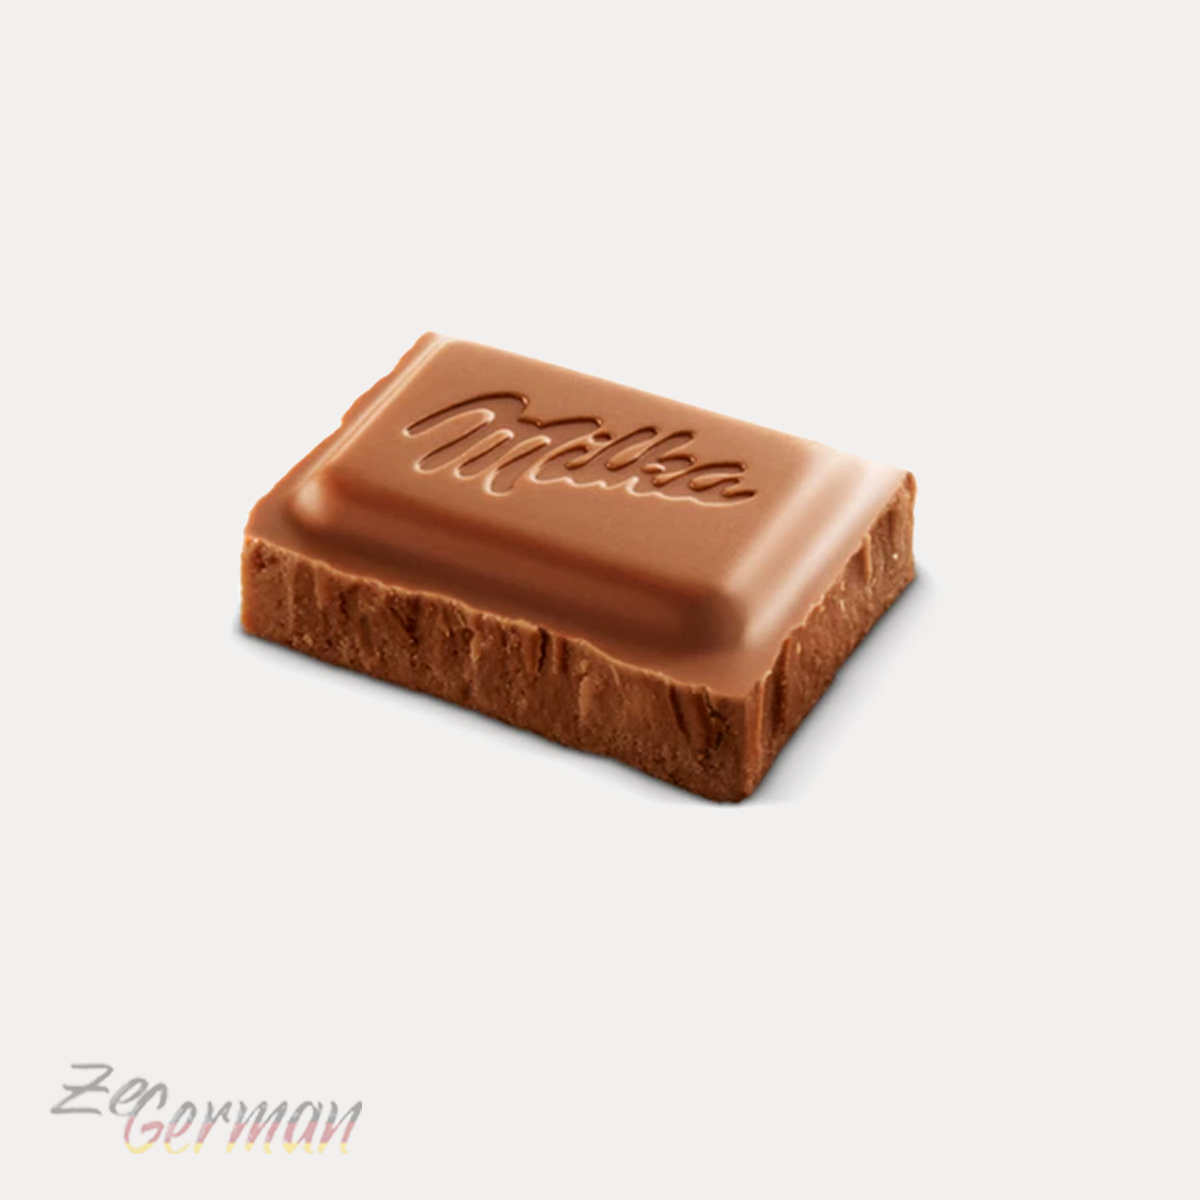 Milka Alpenmilch Schokolade MMMAX, 270 g